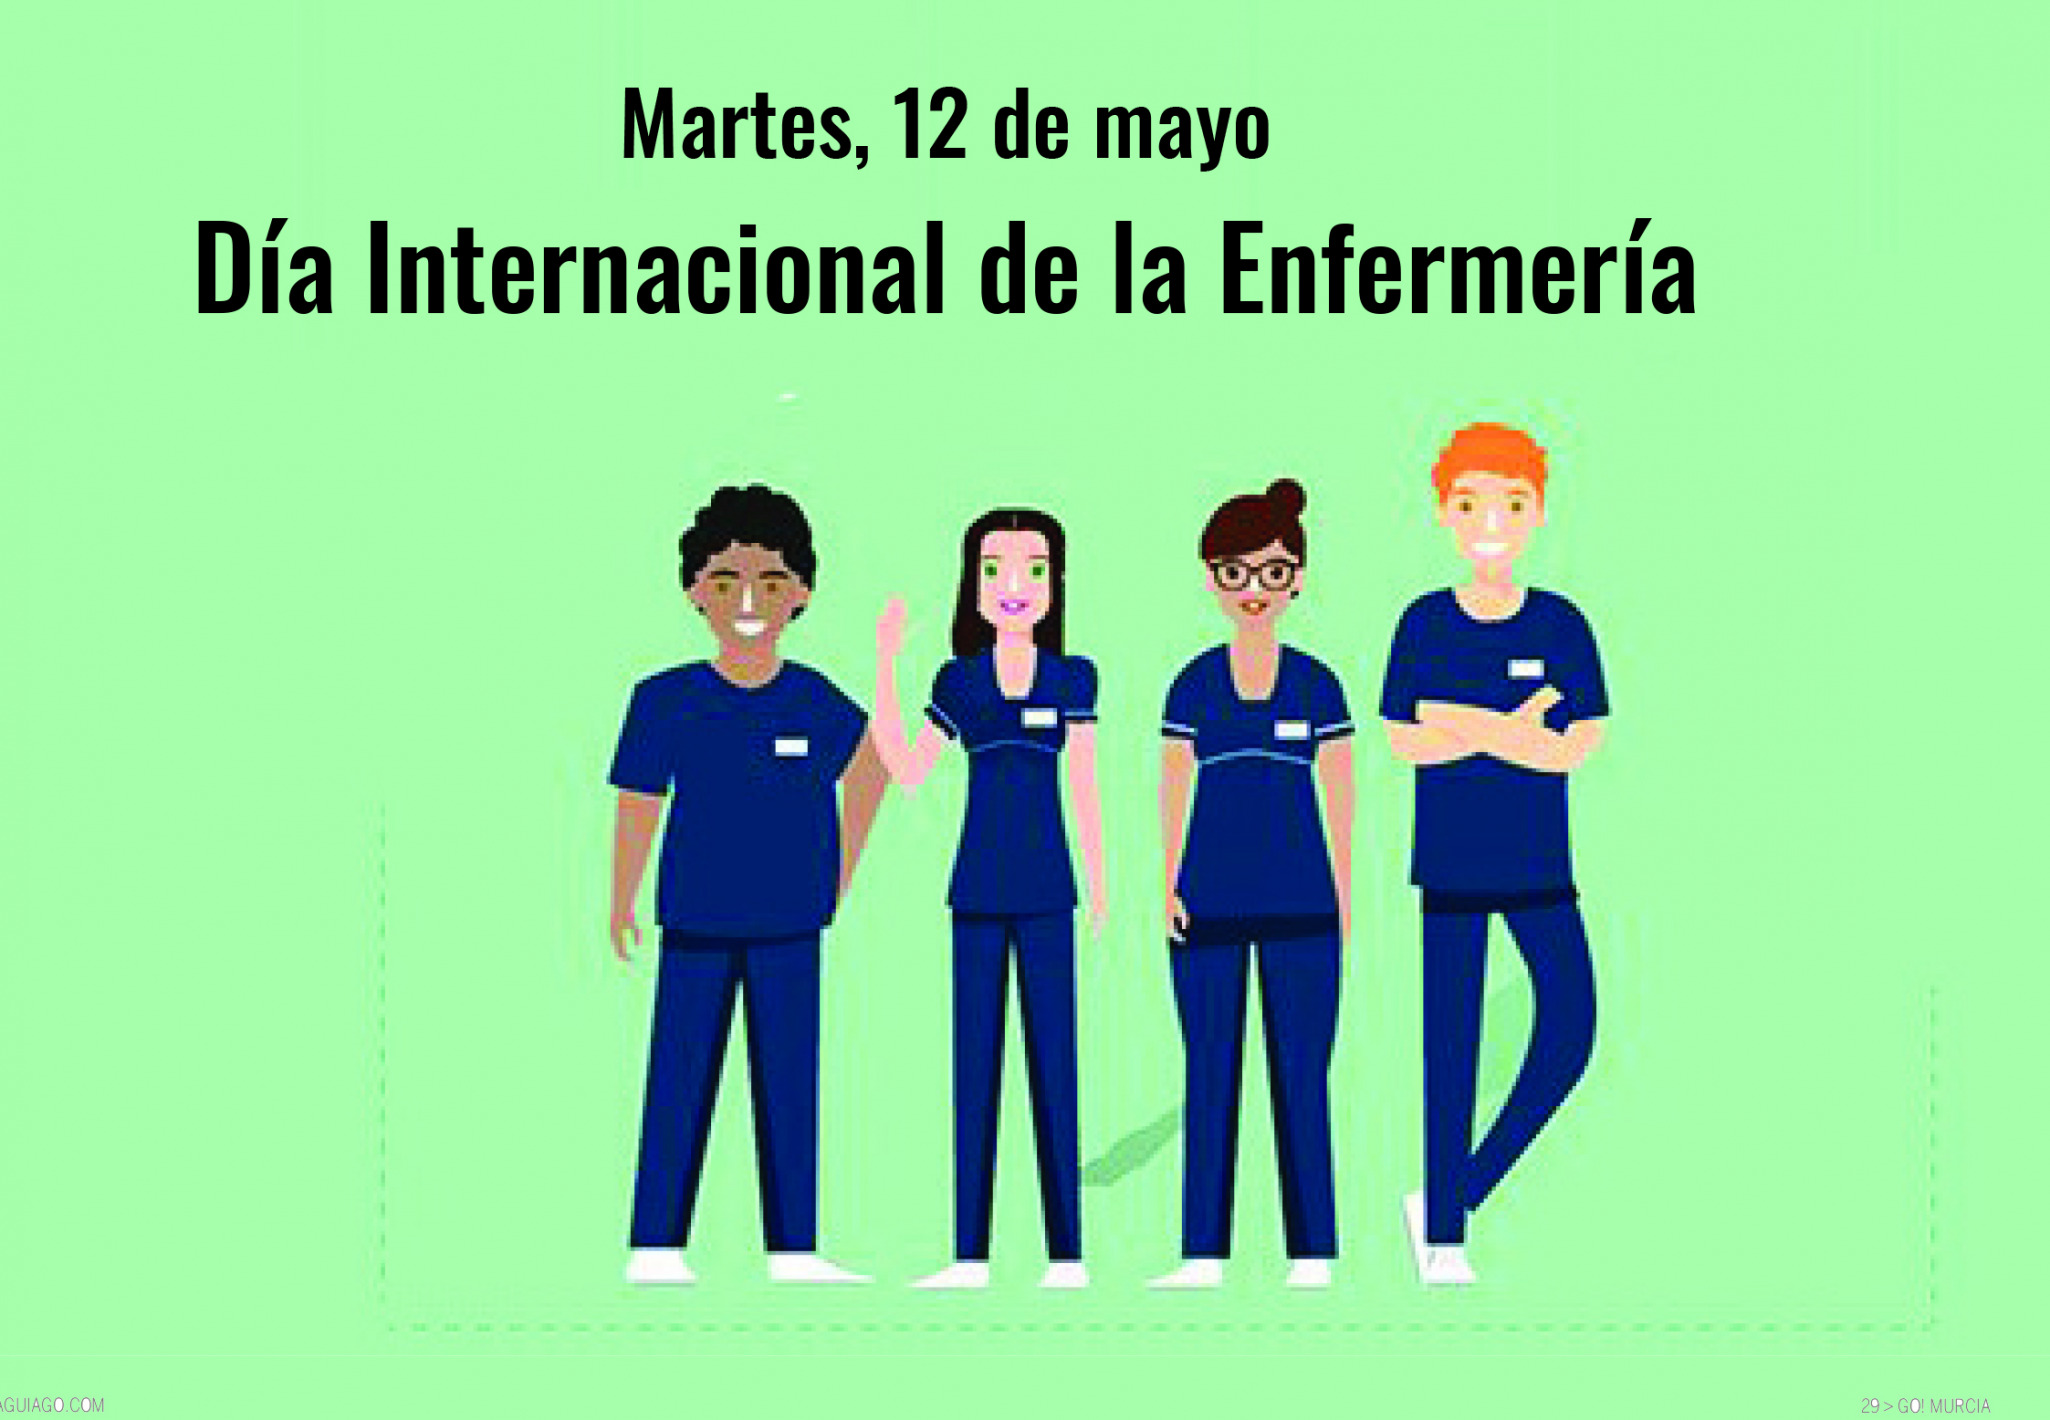 Día Internacional de la Enfermería